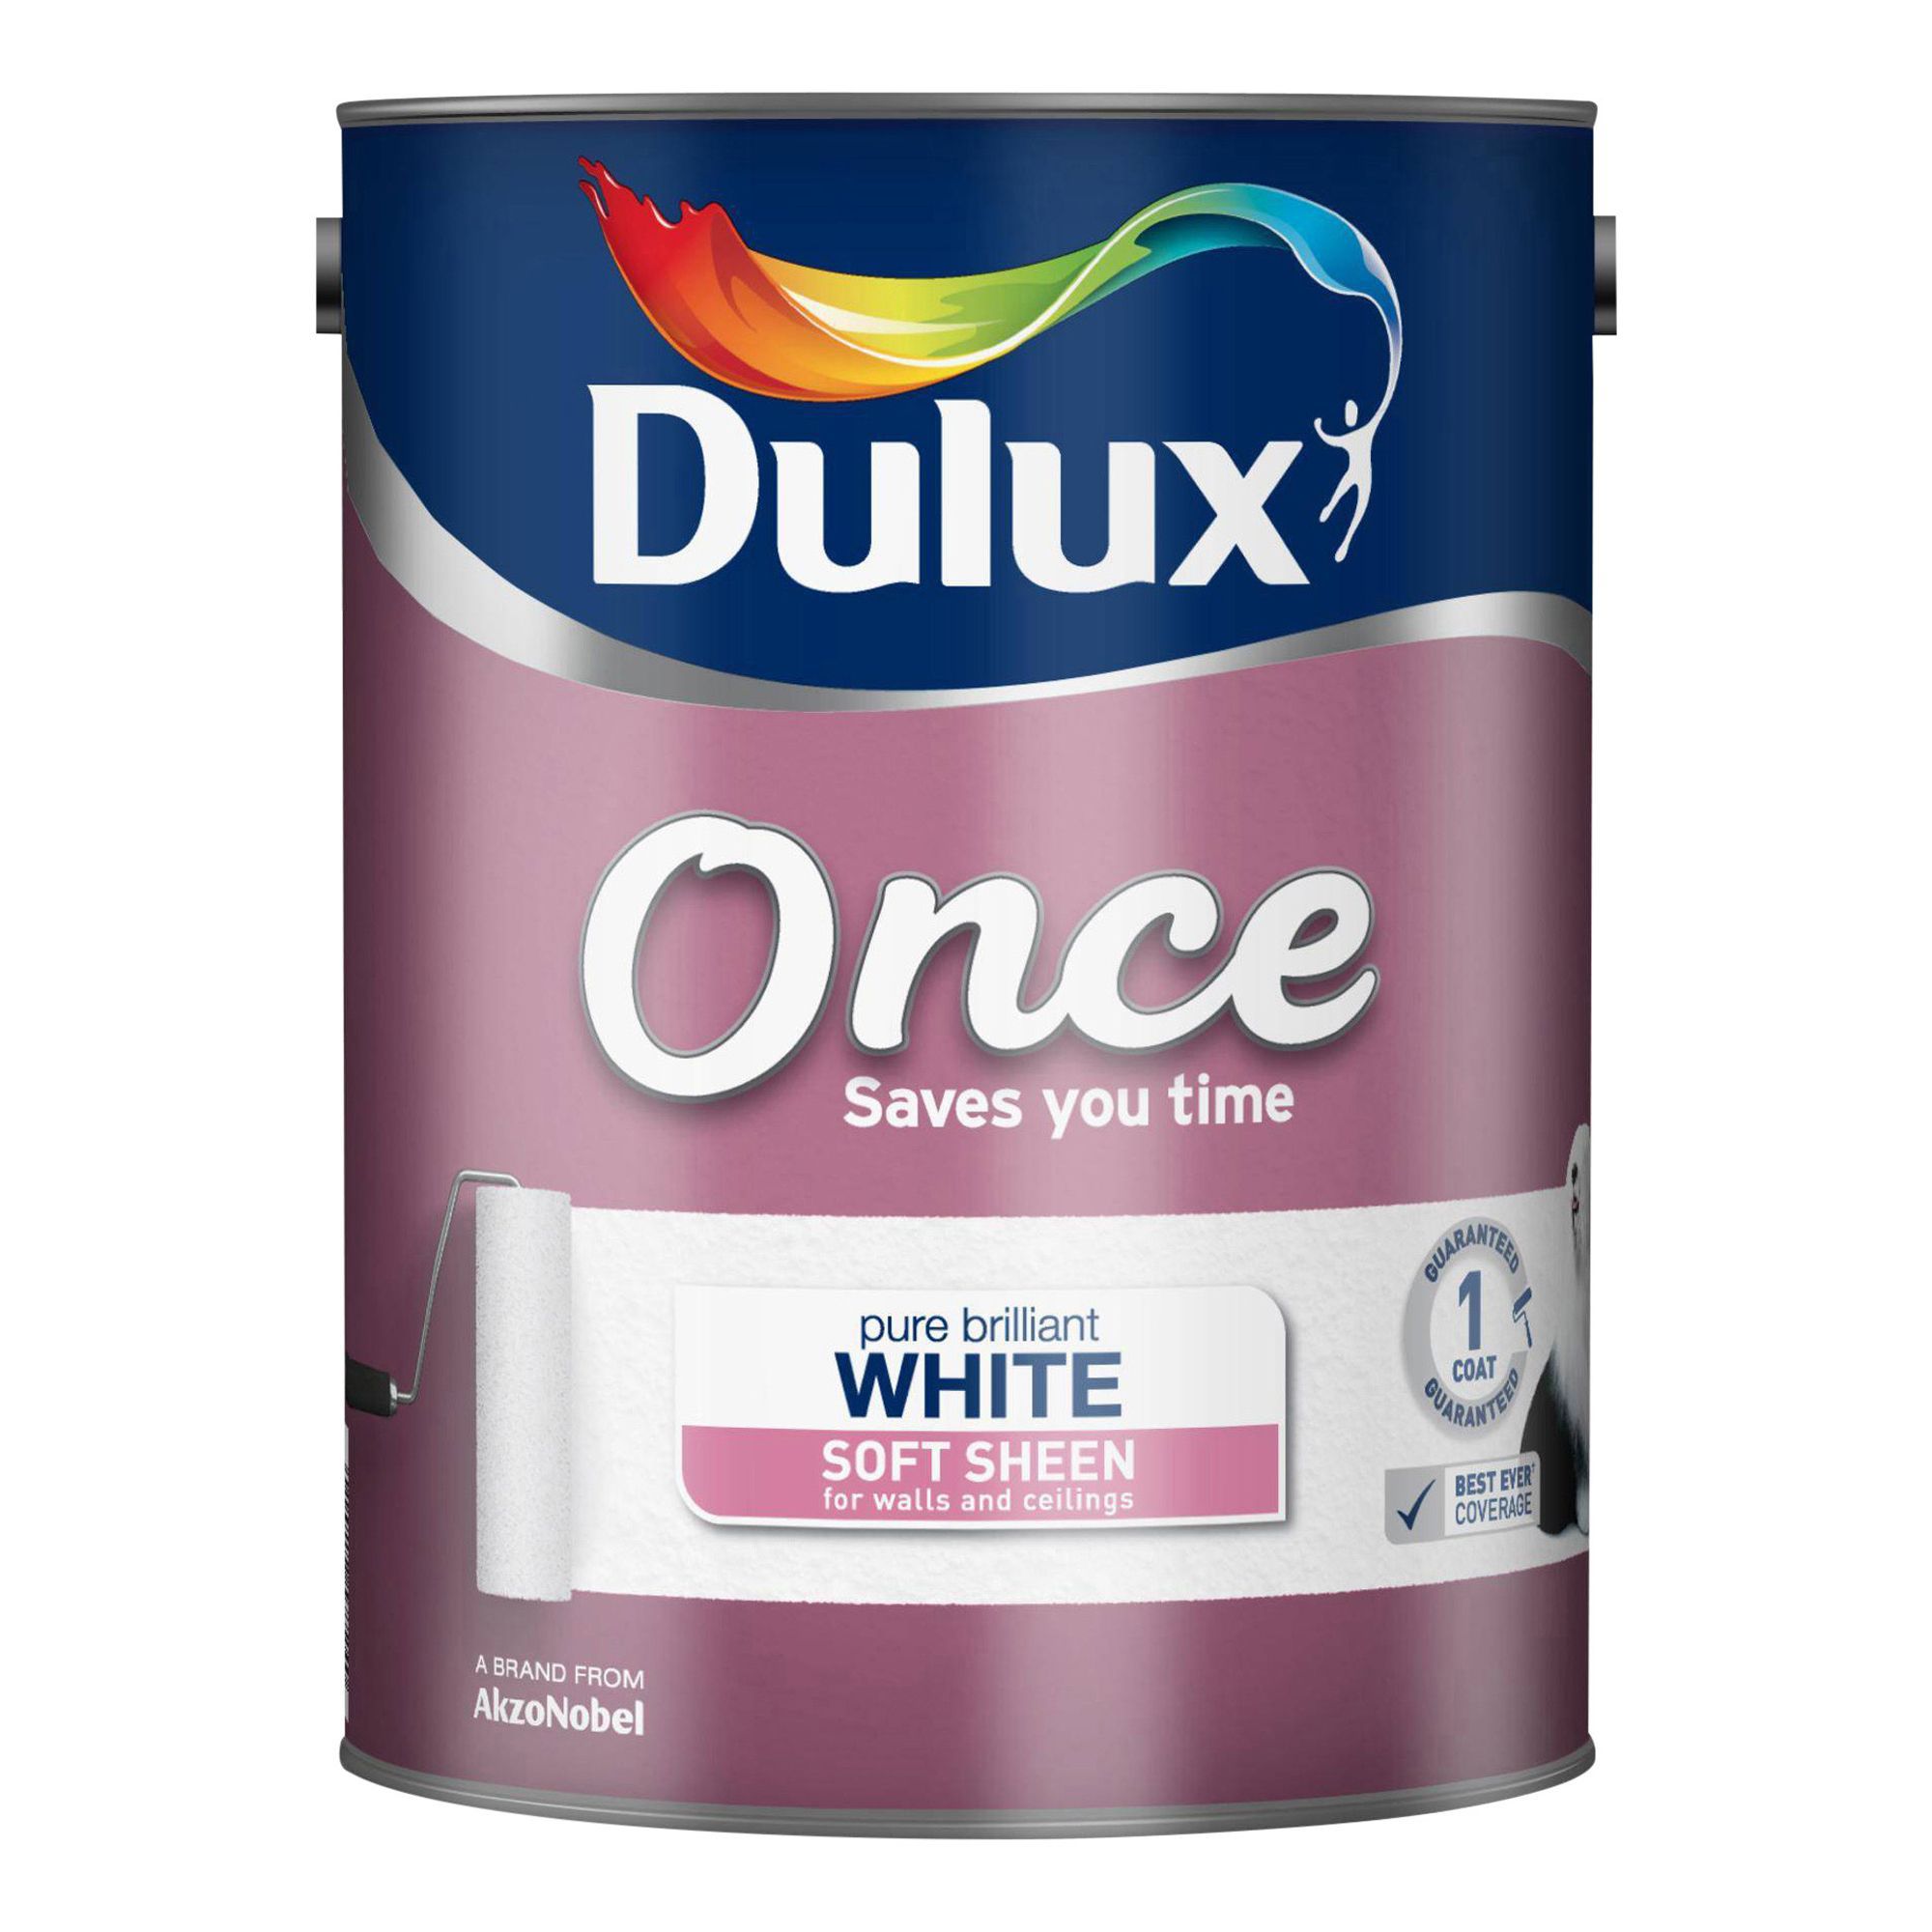 Dulux Once Pure brilliant white Soft sheen Emulsion paint, 5L